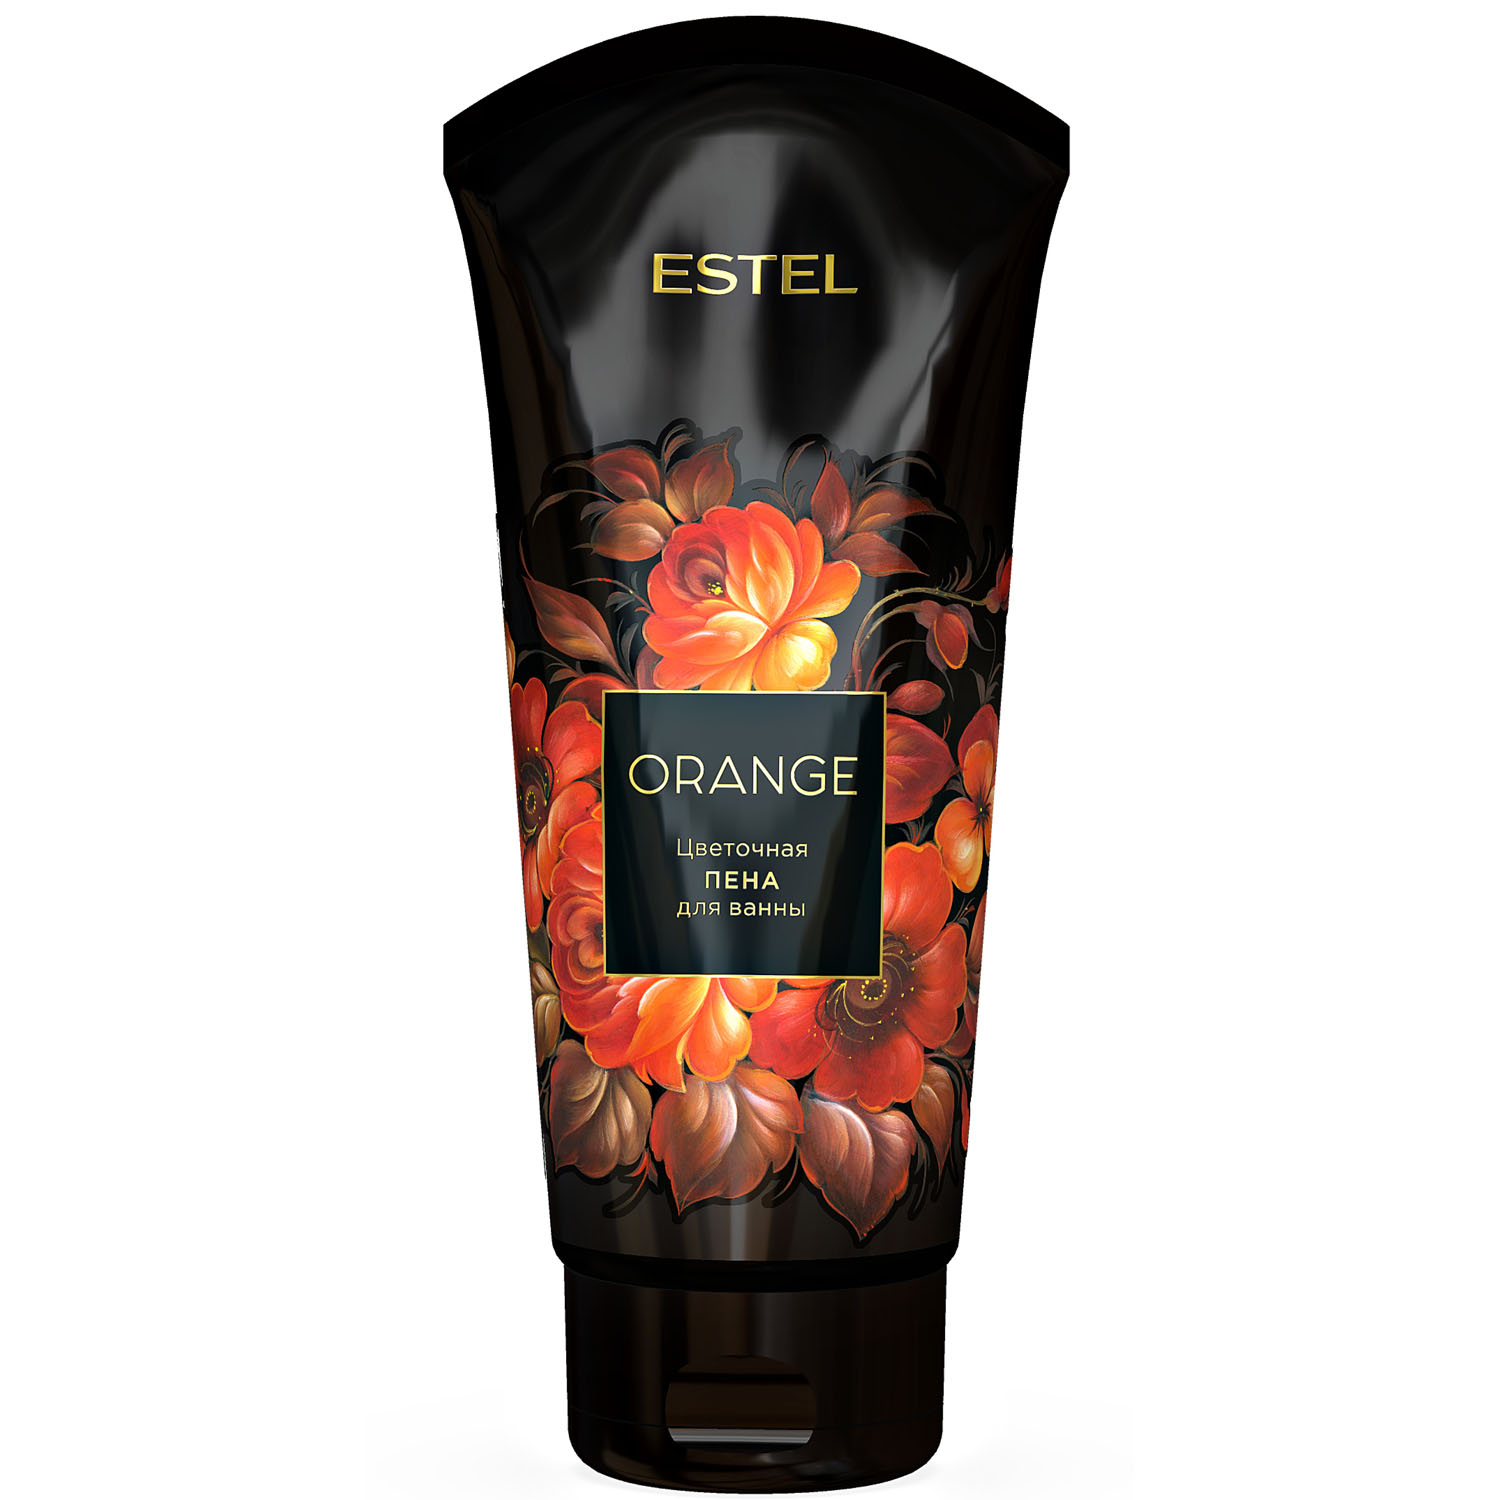 Еstеl flowers цветочная пена для ванны orange 200мл ^акция SALE -33%